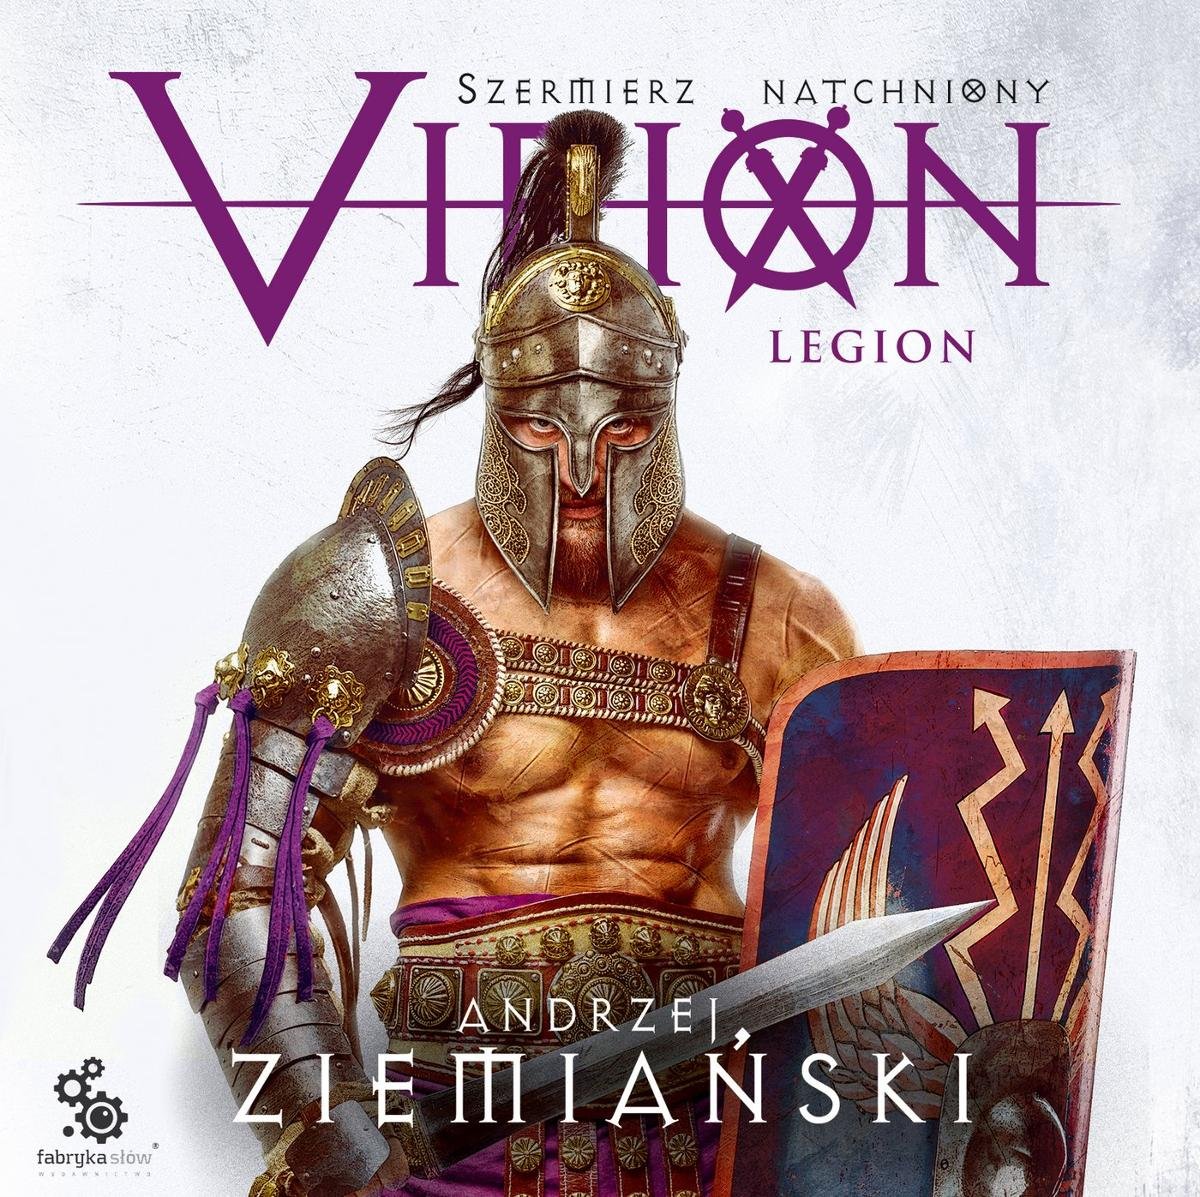 okładka audiobooka pod tytułem Virion. Legion, autor Andrzej Ziemiański